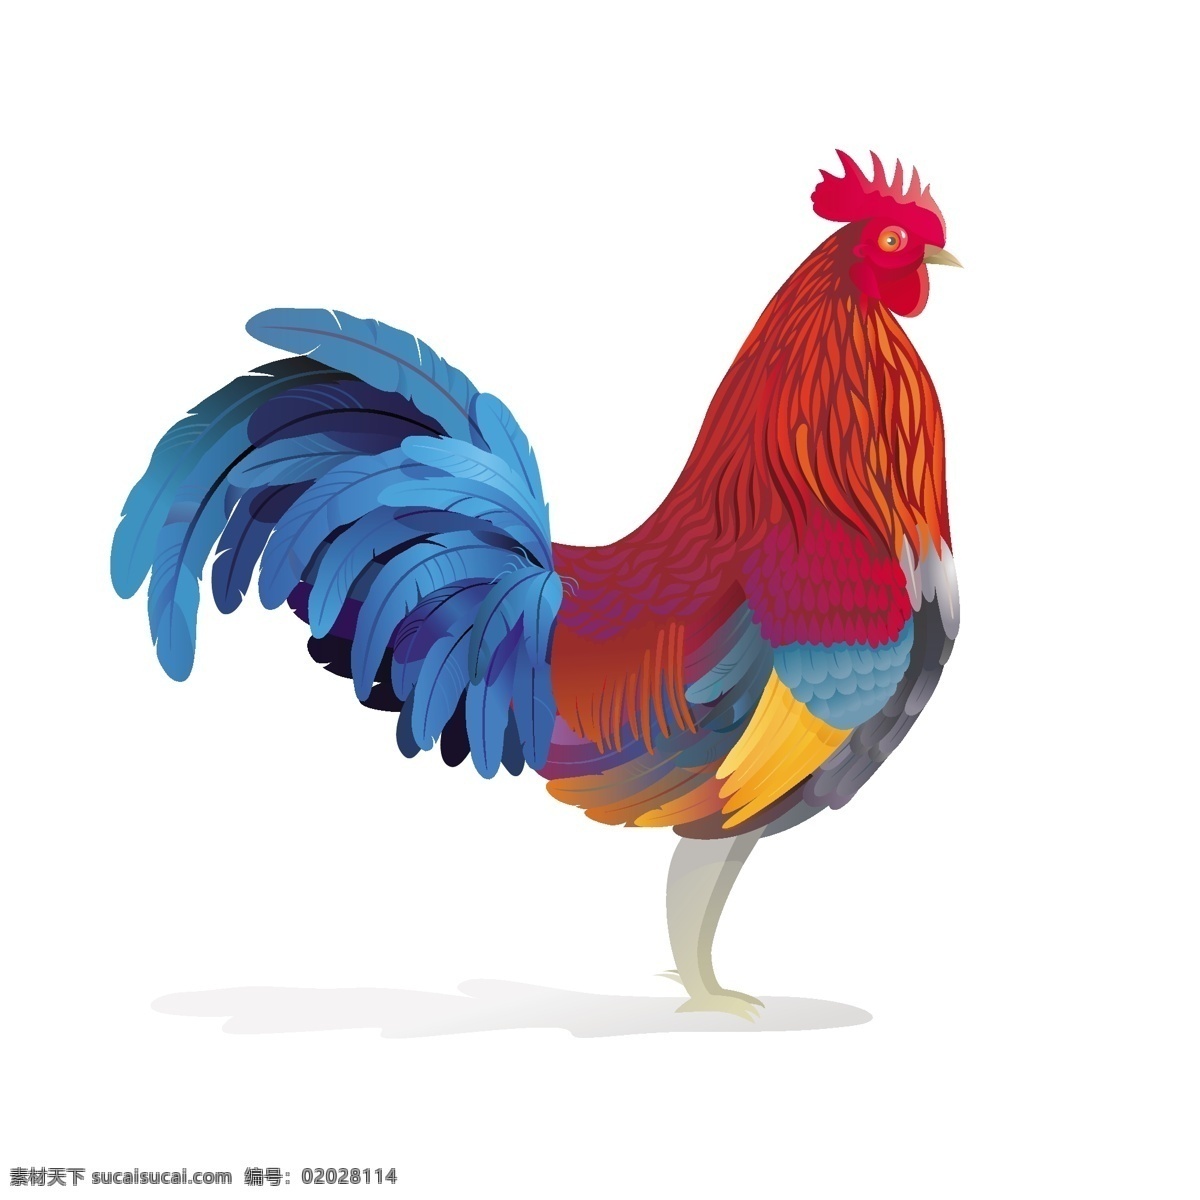 公鸡 插画 设计素材 公鸡插画 金鸡 手绘 鸡年 2017 年 矢量图